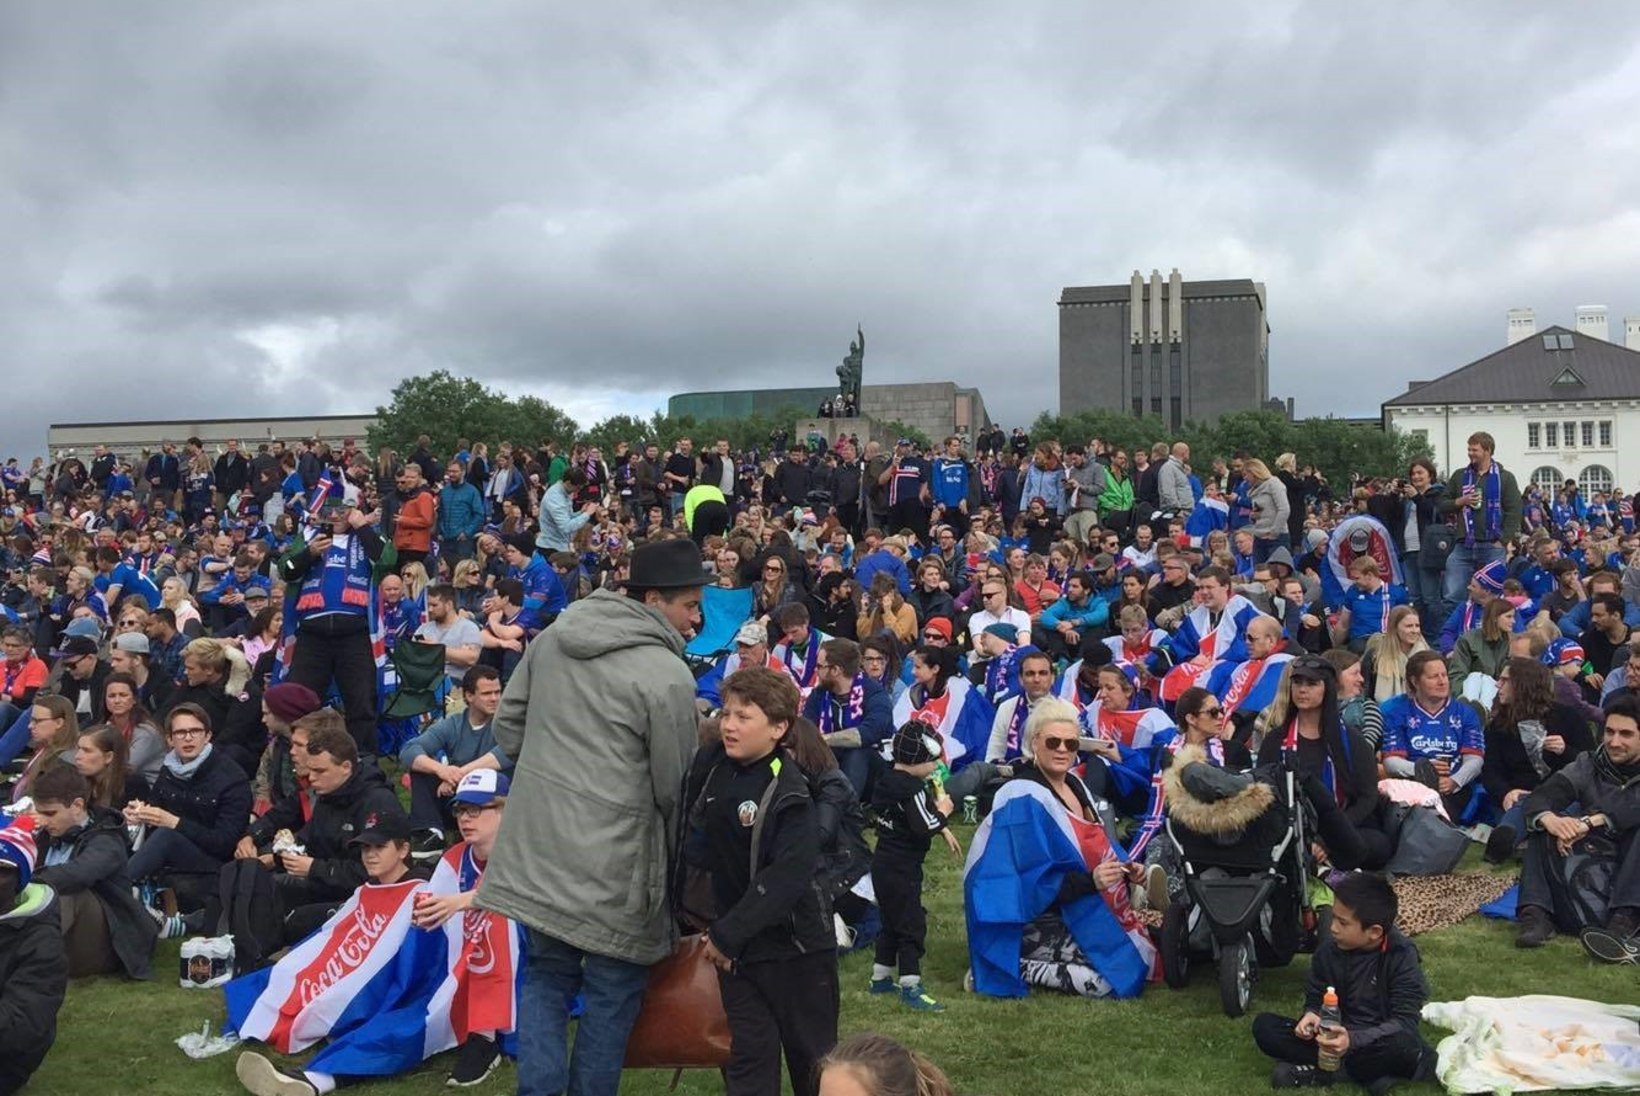 FOTOD ISLANDILT | Tuhanded inimesed on kogunenud Reykjaviki kesklinna jalgpalli vaatama